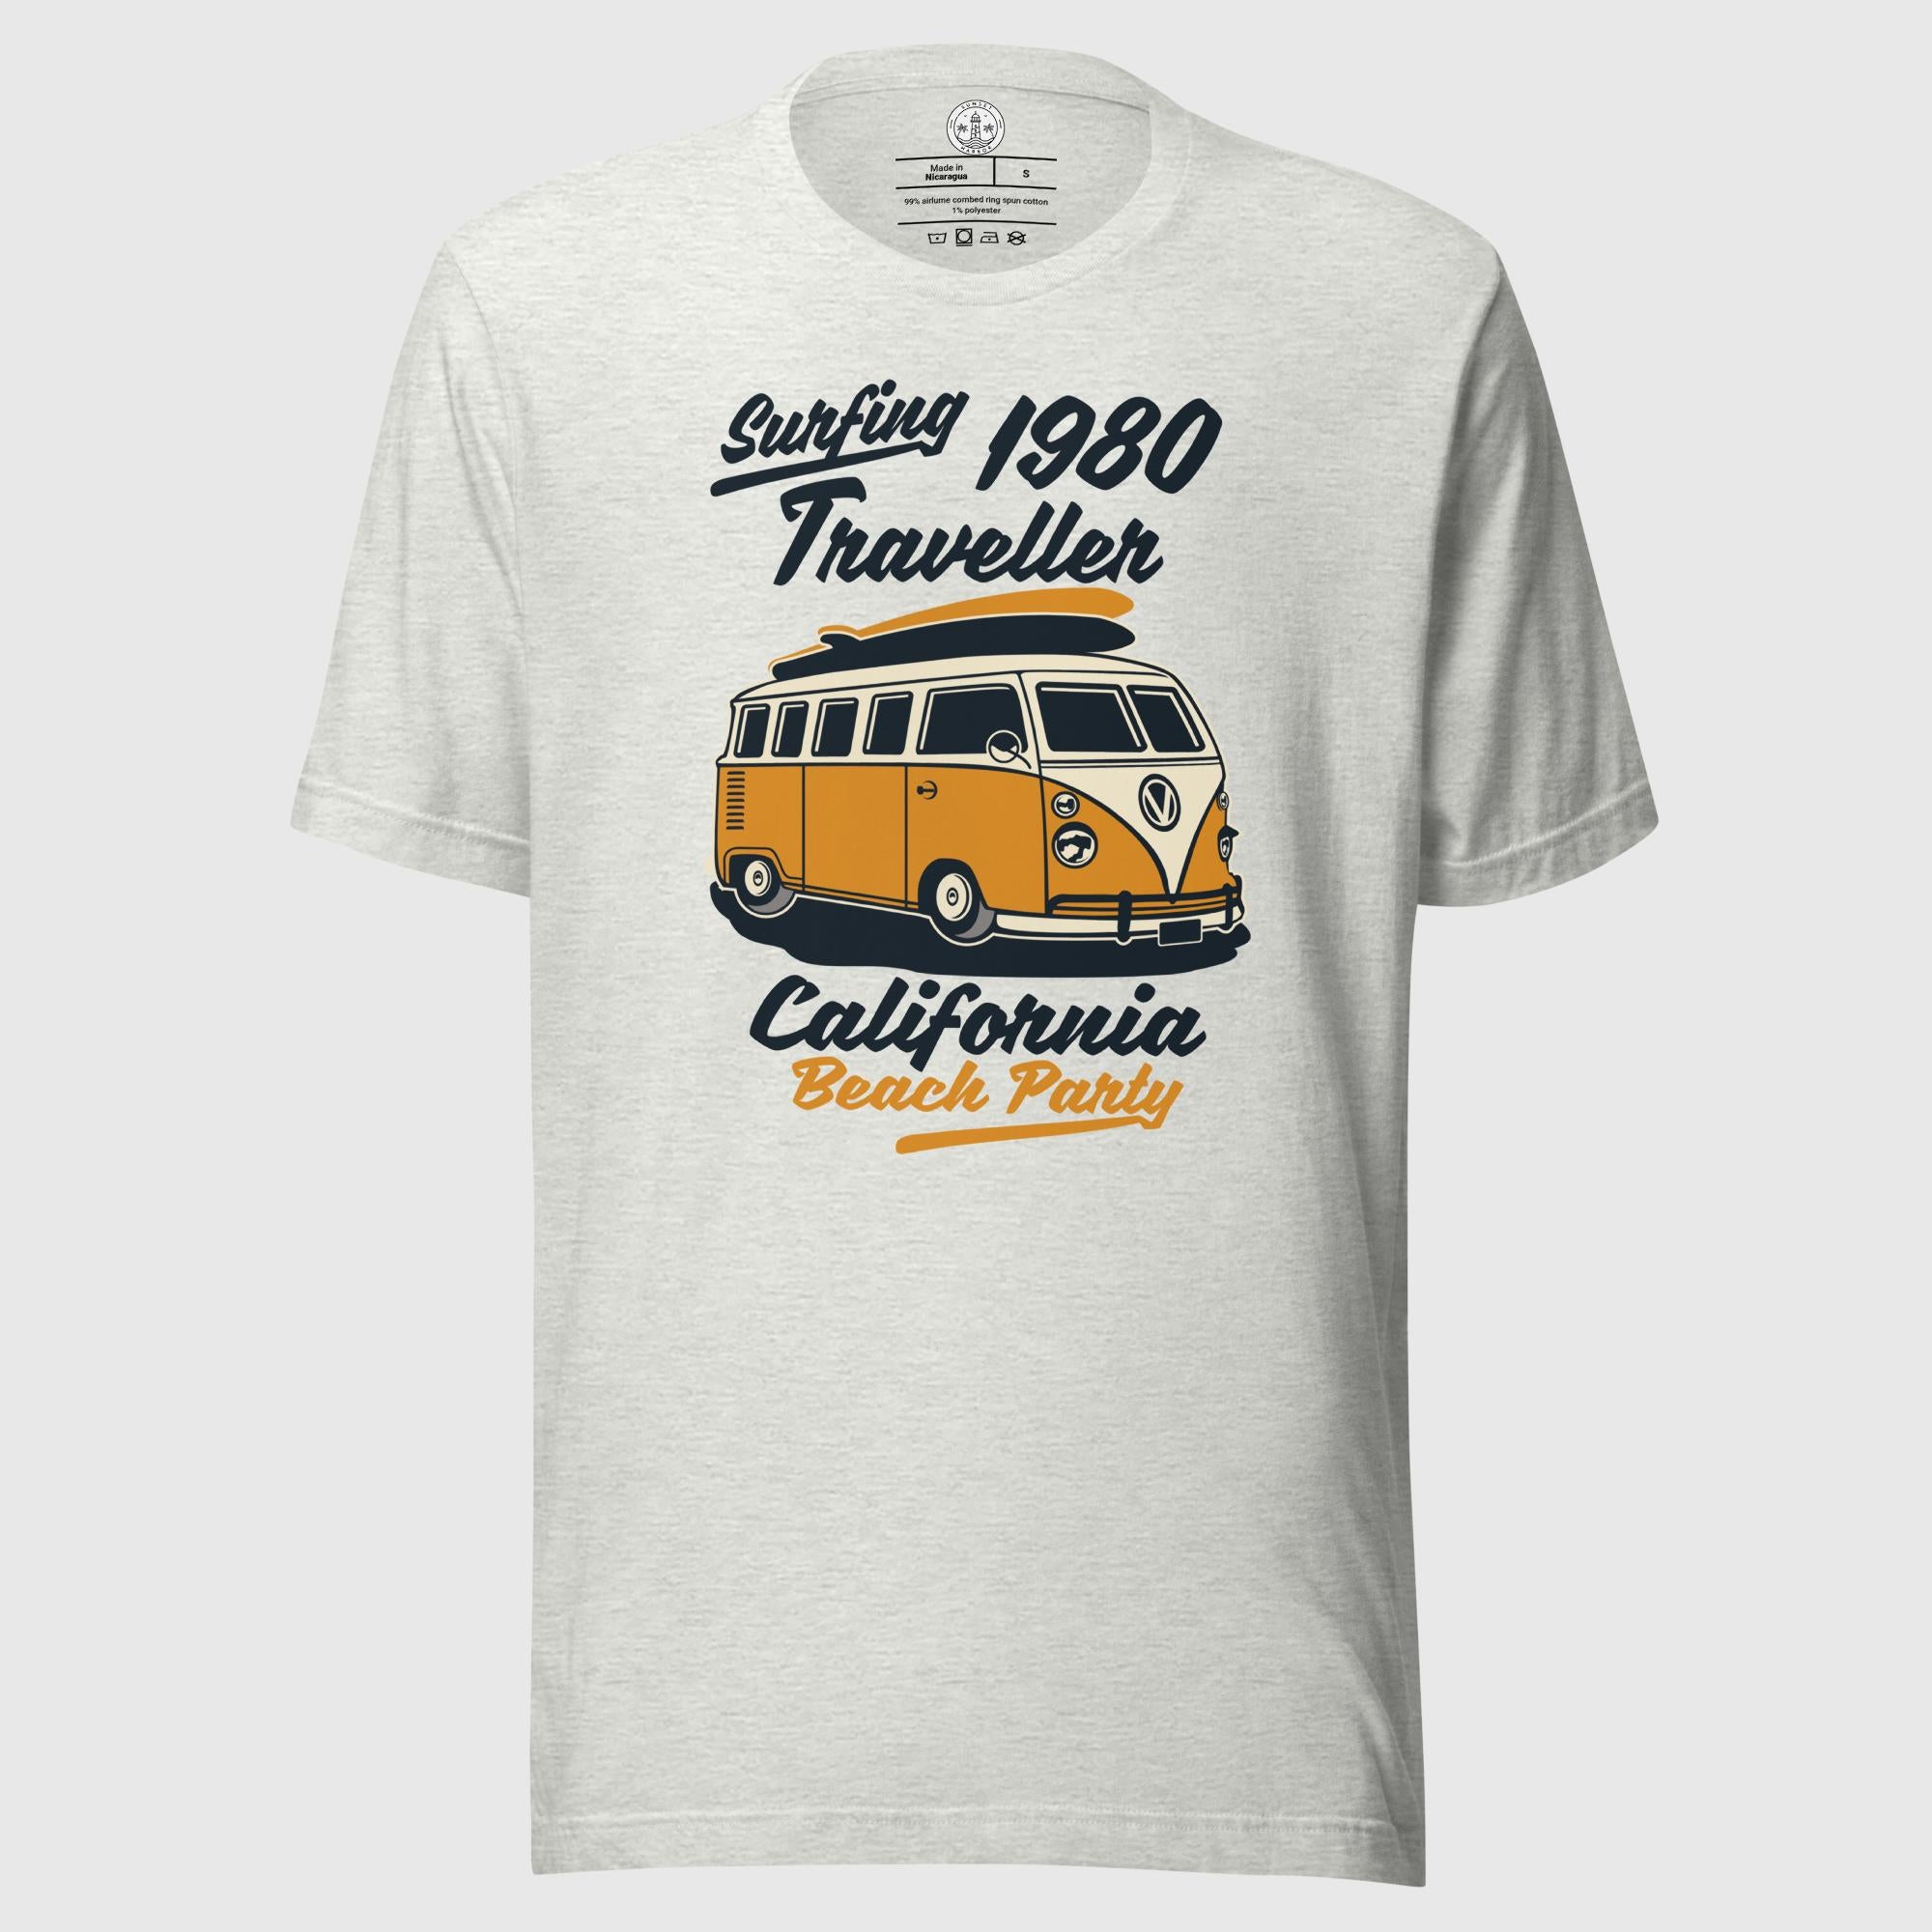 Unisex Staple T-Shirt  - Traveller 1980 - Sunset Harbor Clothing